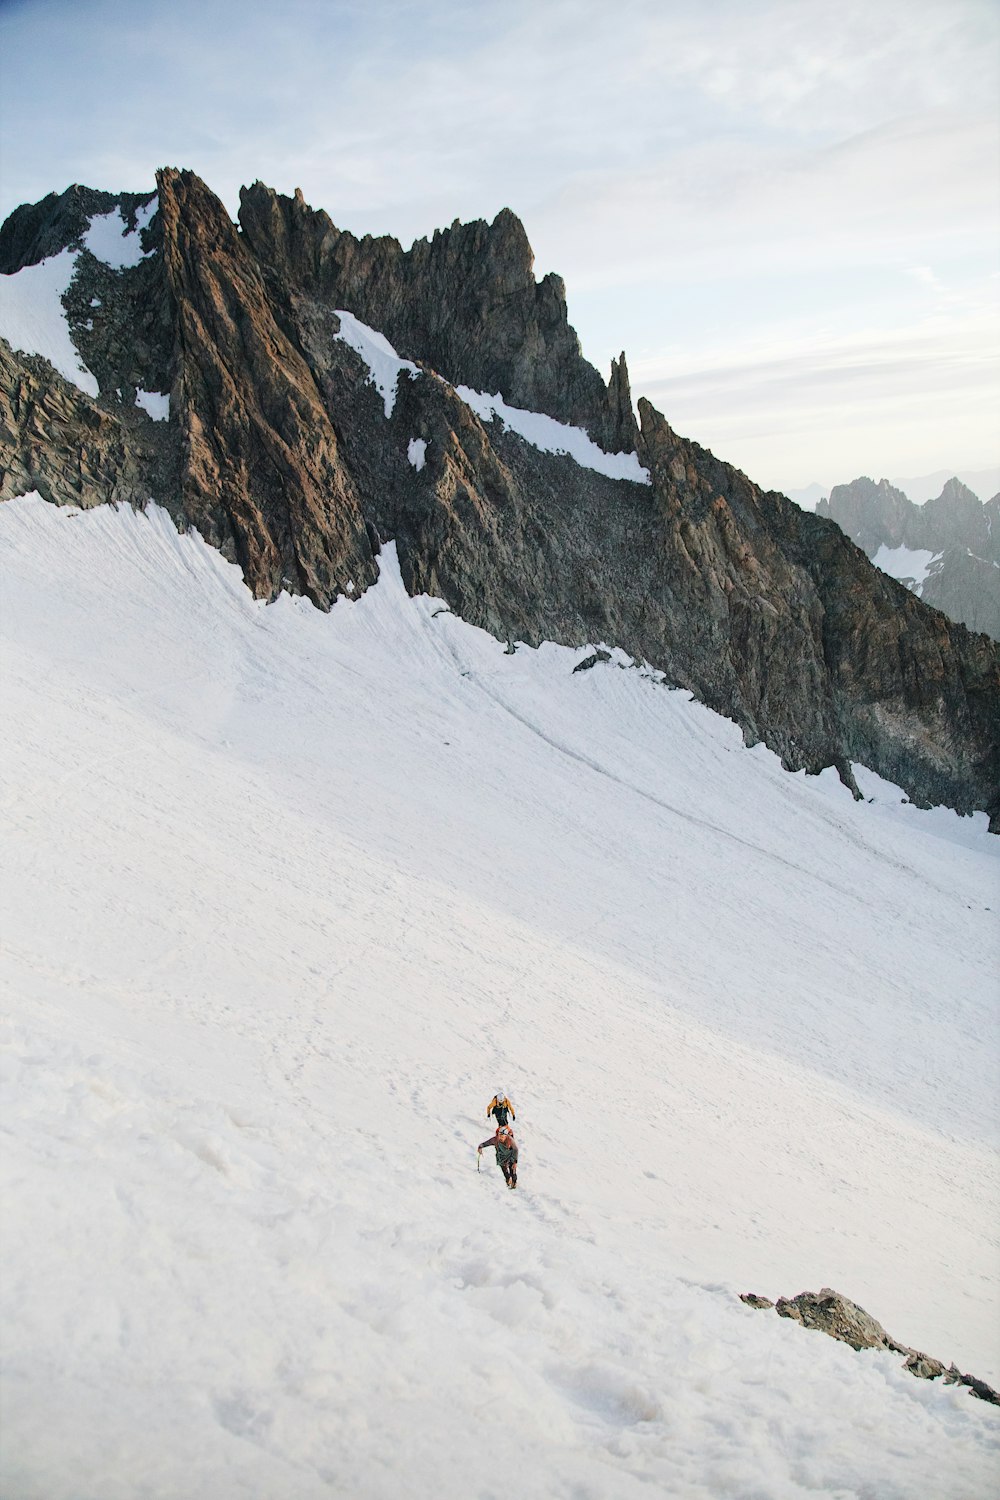 Um homem está esquiando em uma montanha nevada